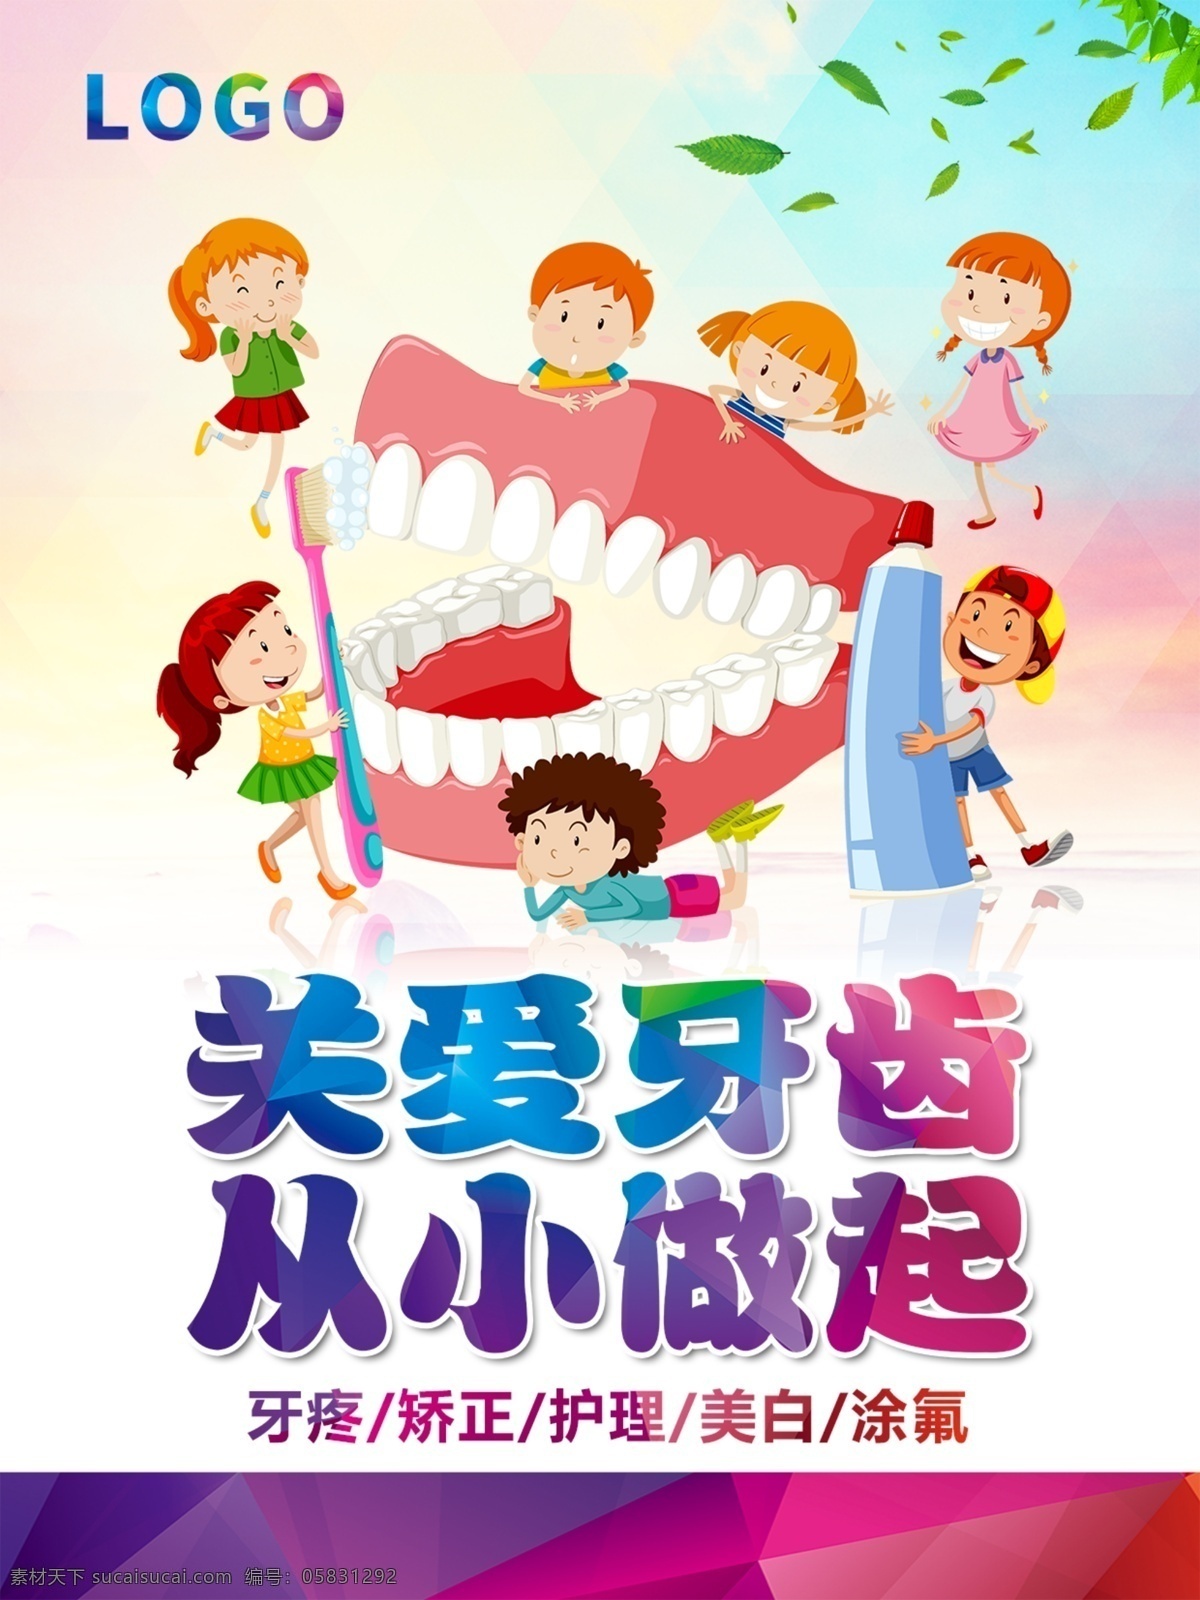 儿童牙齿宣传 儿童 齿科 牙齿 关爱 从小 卡通 矫正 护理 口腔 刷牙 涂氟 美白